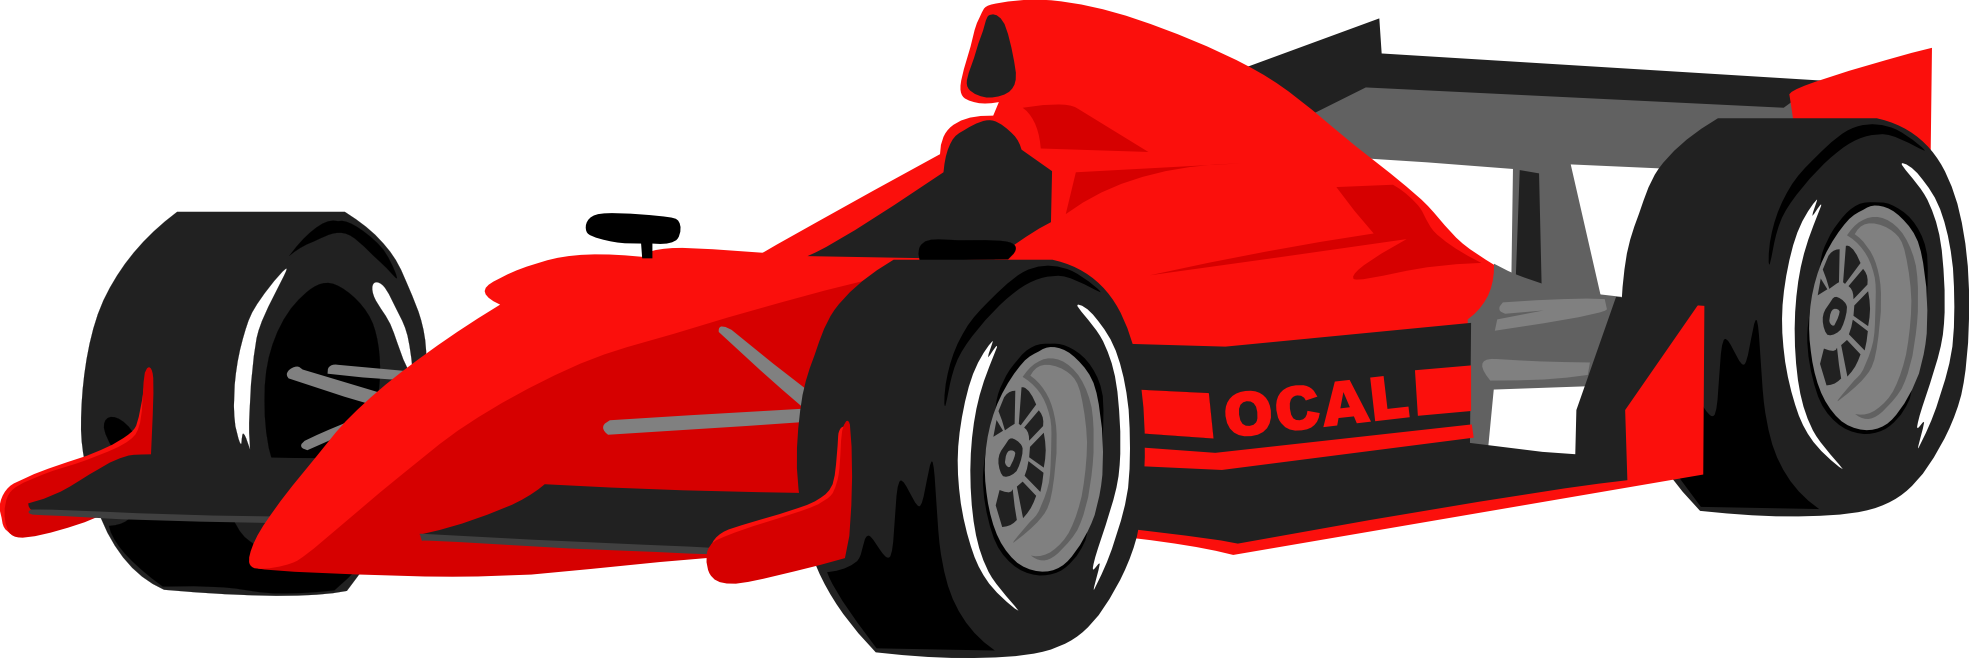 Campionato del mondo di Formula Uno (Corse)